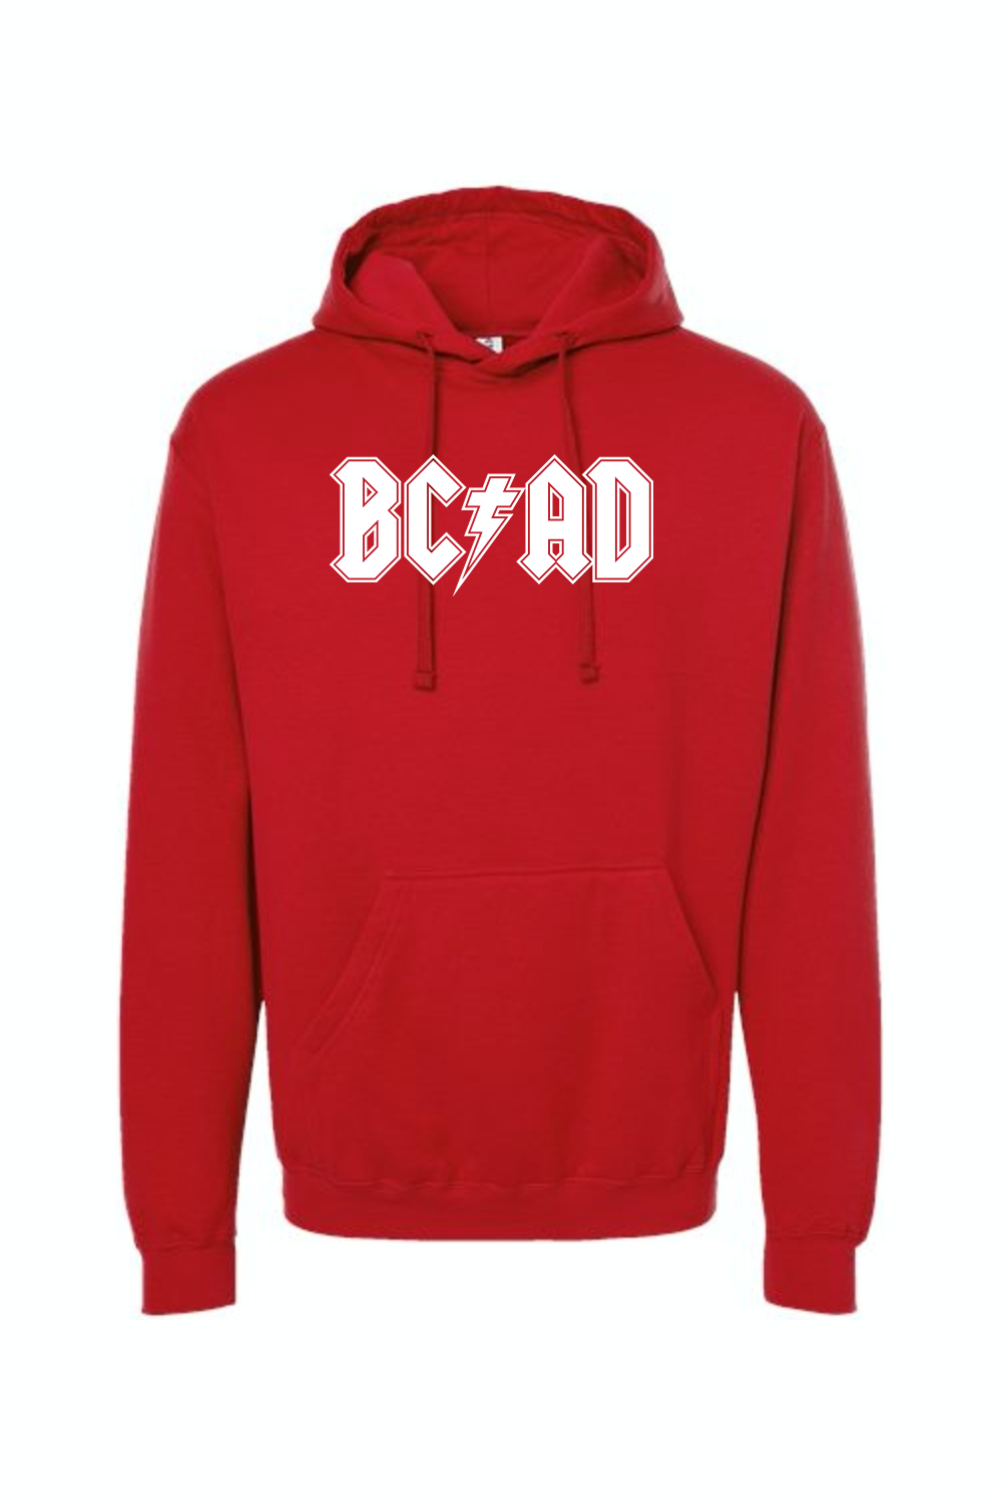 BCAD - Hoodie Sweatshirt